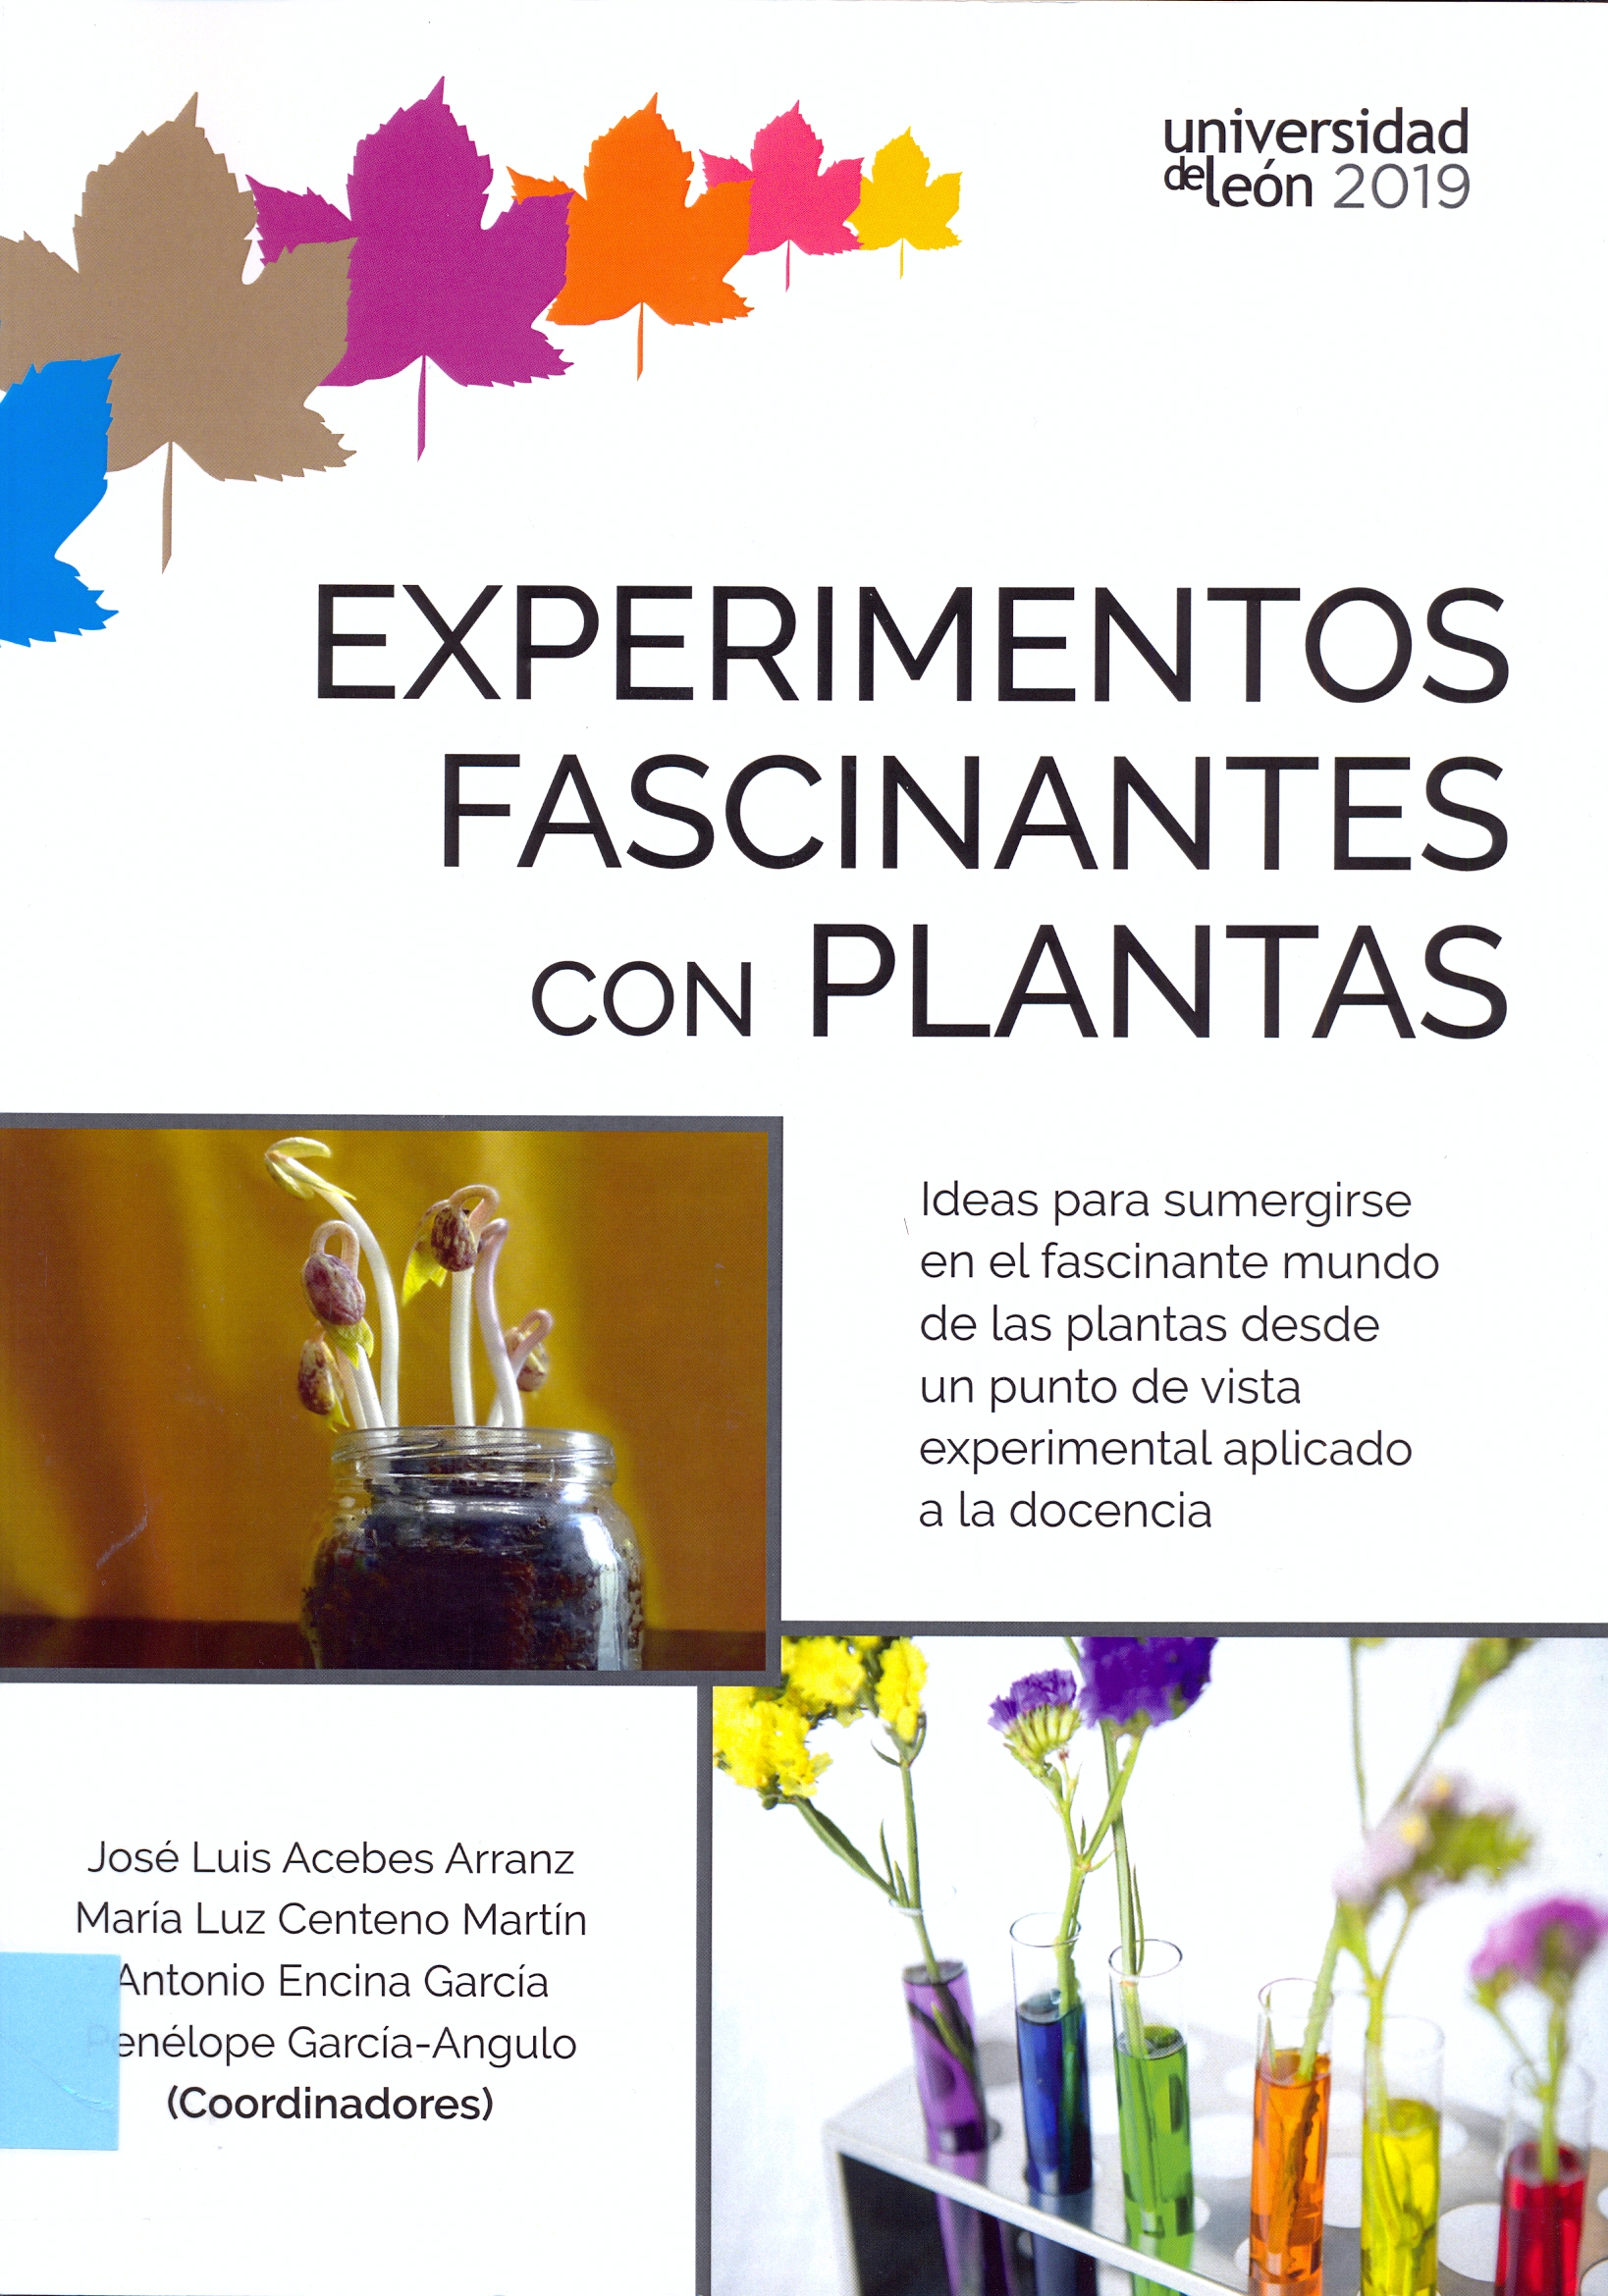 Imagen de portada del libro Experimentos fascinantes con plantas